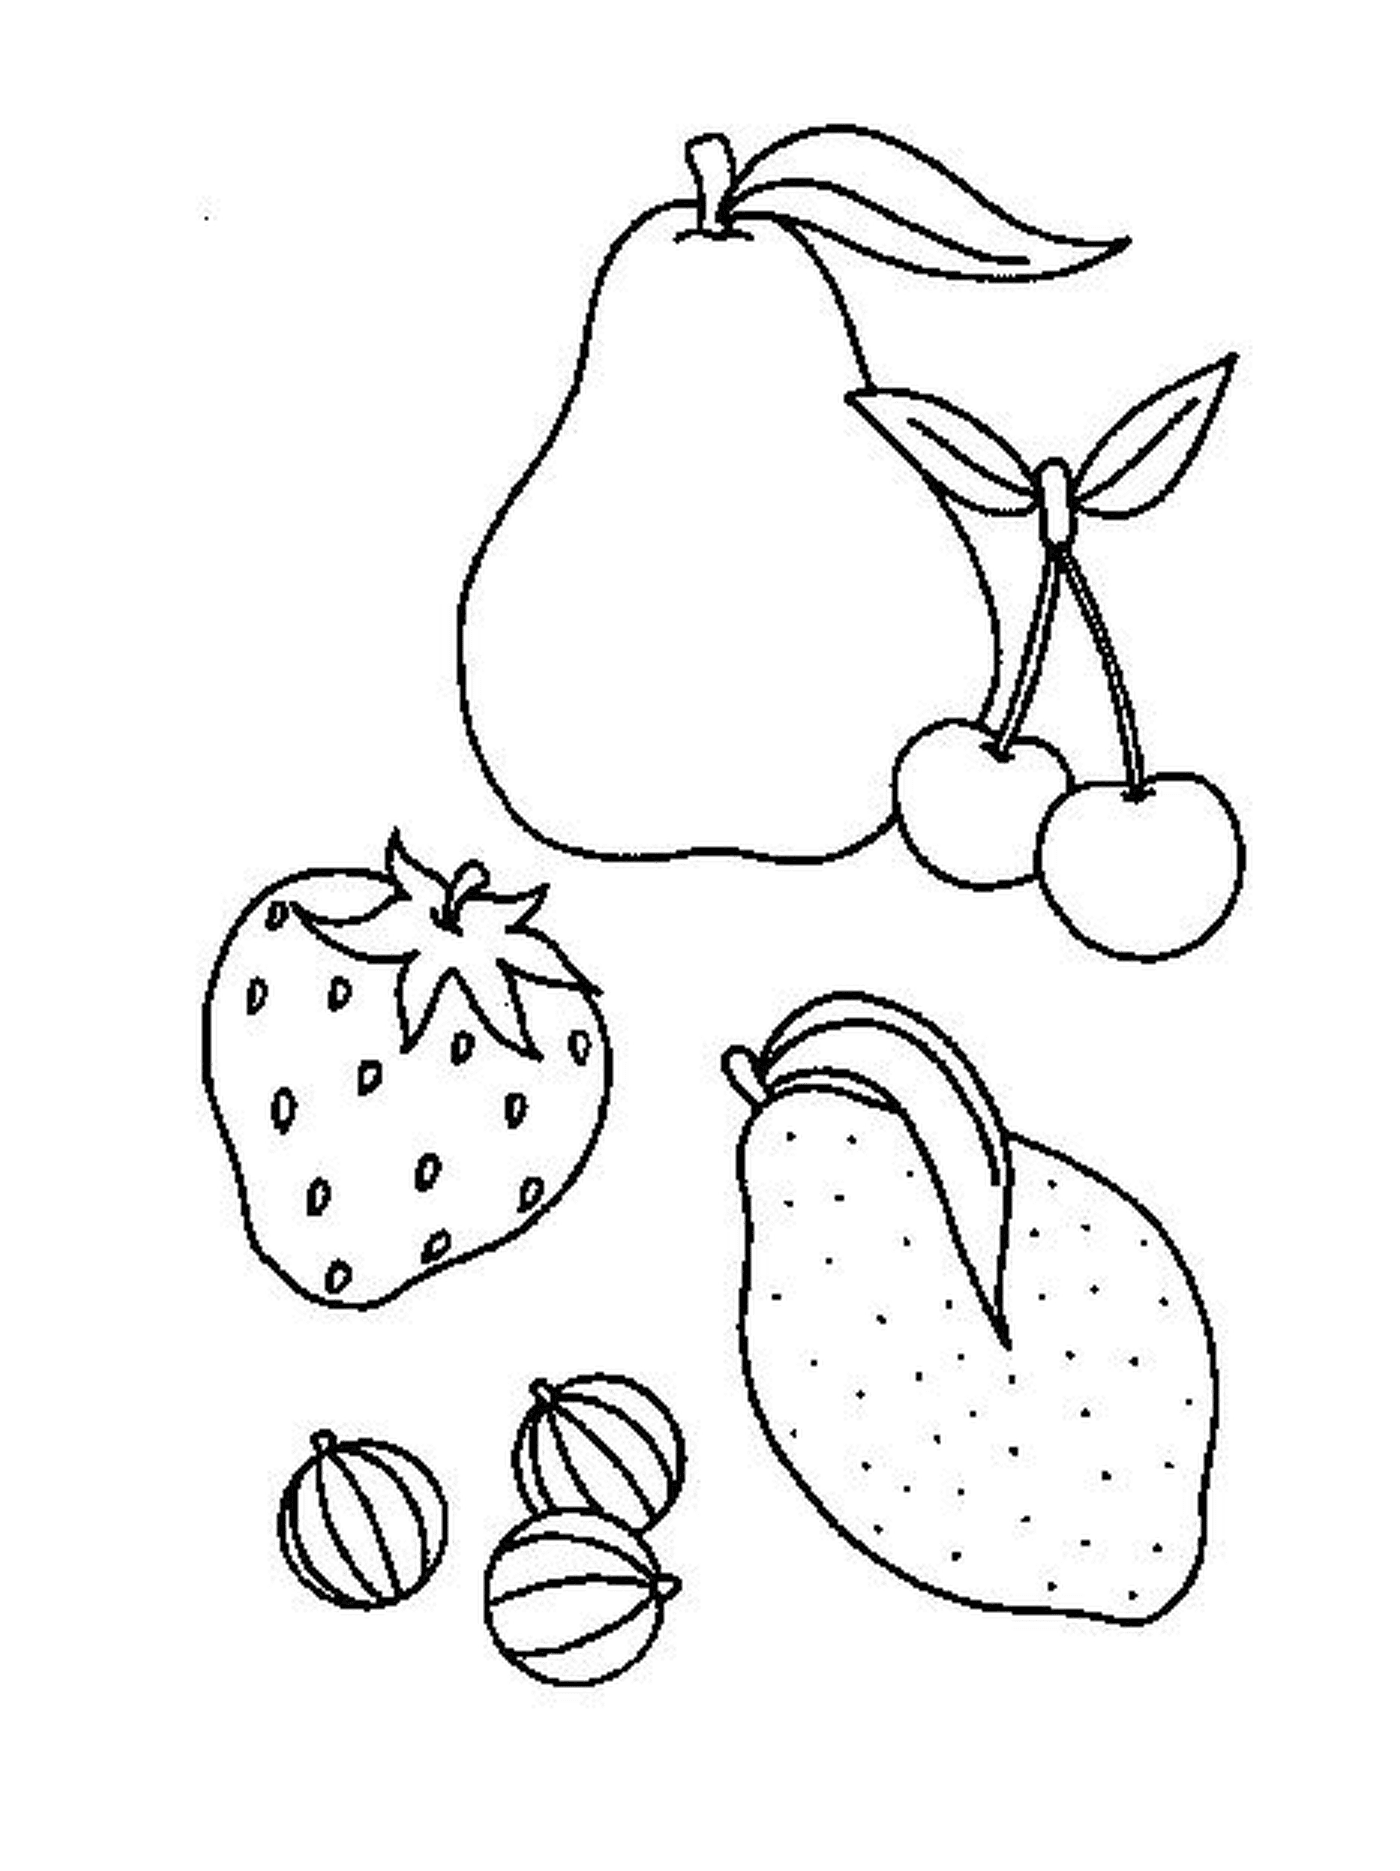  mix of fruit drawn 